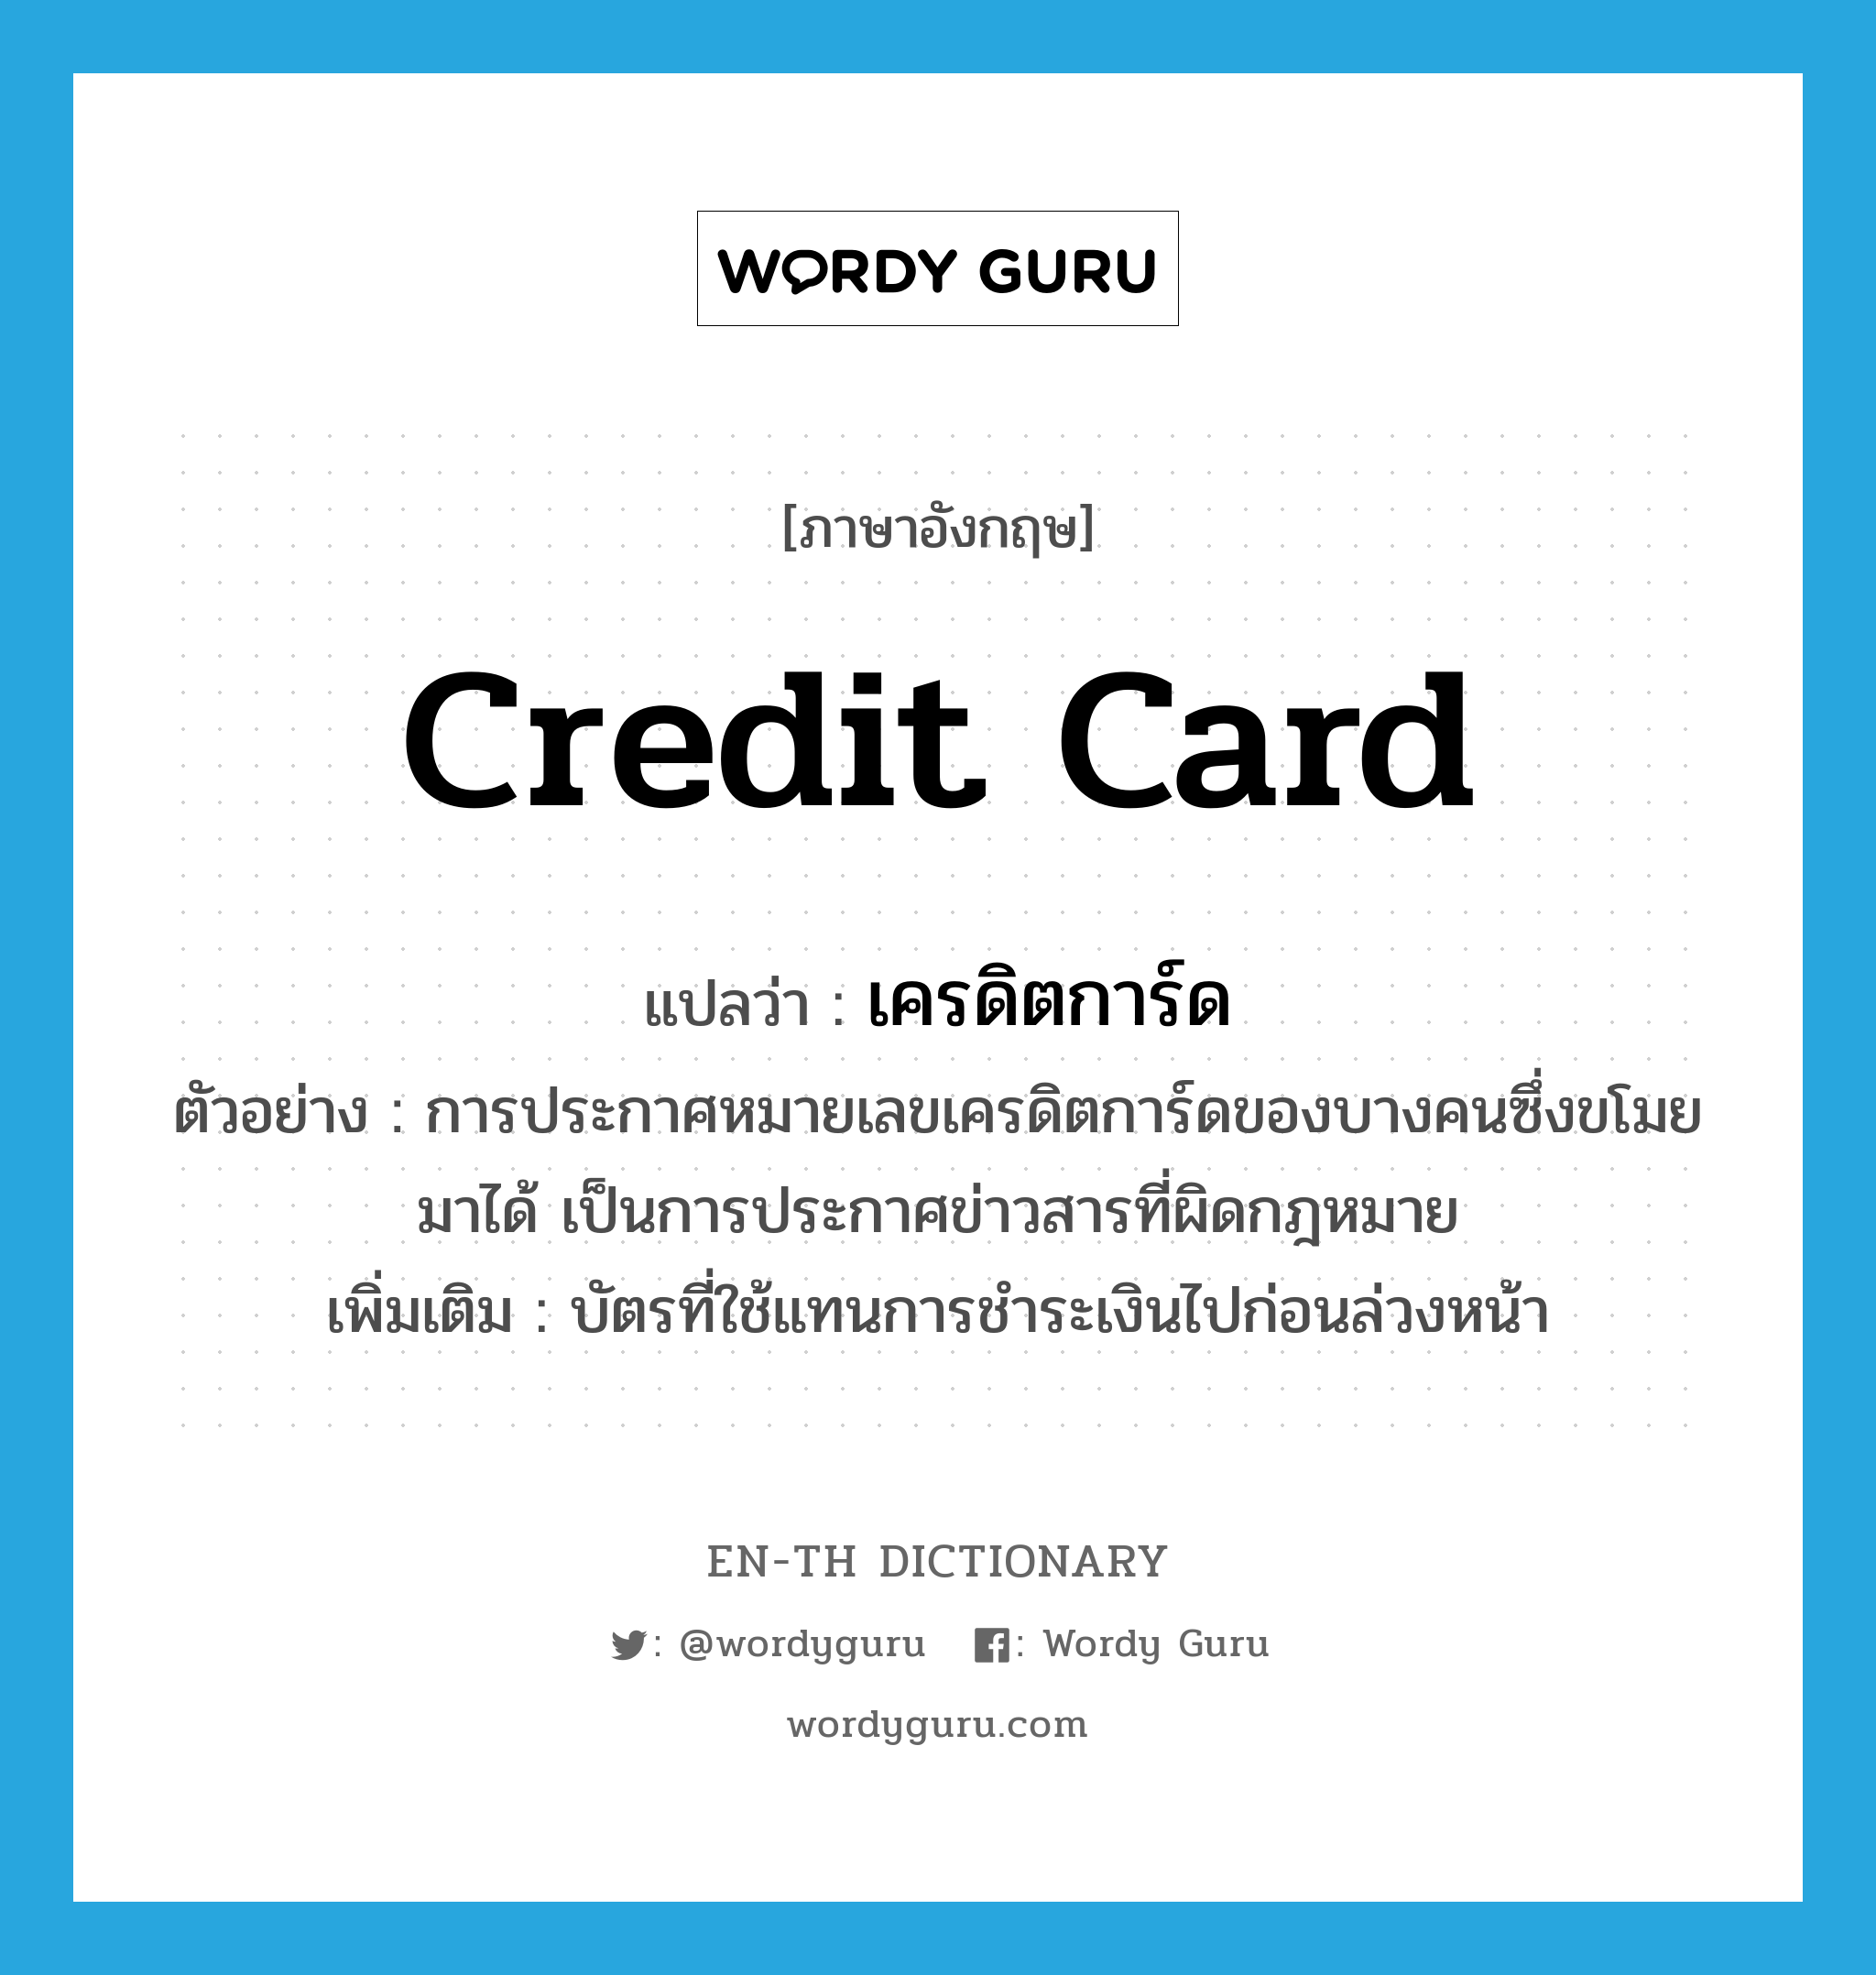 credit card แปลว่า?, คำศัพท์ภาษาอังกฤษ credit card แปลว่า เครดิตการ์ด ประเภท N ตัวอย่าง การประกาศหมายเลขเครดิตการ์ดของบางคนซึ่งขโมยมาได้ เป็นการประกาศข่าวสารที่ผิดกฎหมาย เพิ่มเติม บัตรที่ใช้แทนการชำระเงินไปก่อนล่วงหน้า หมวด N